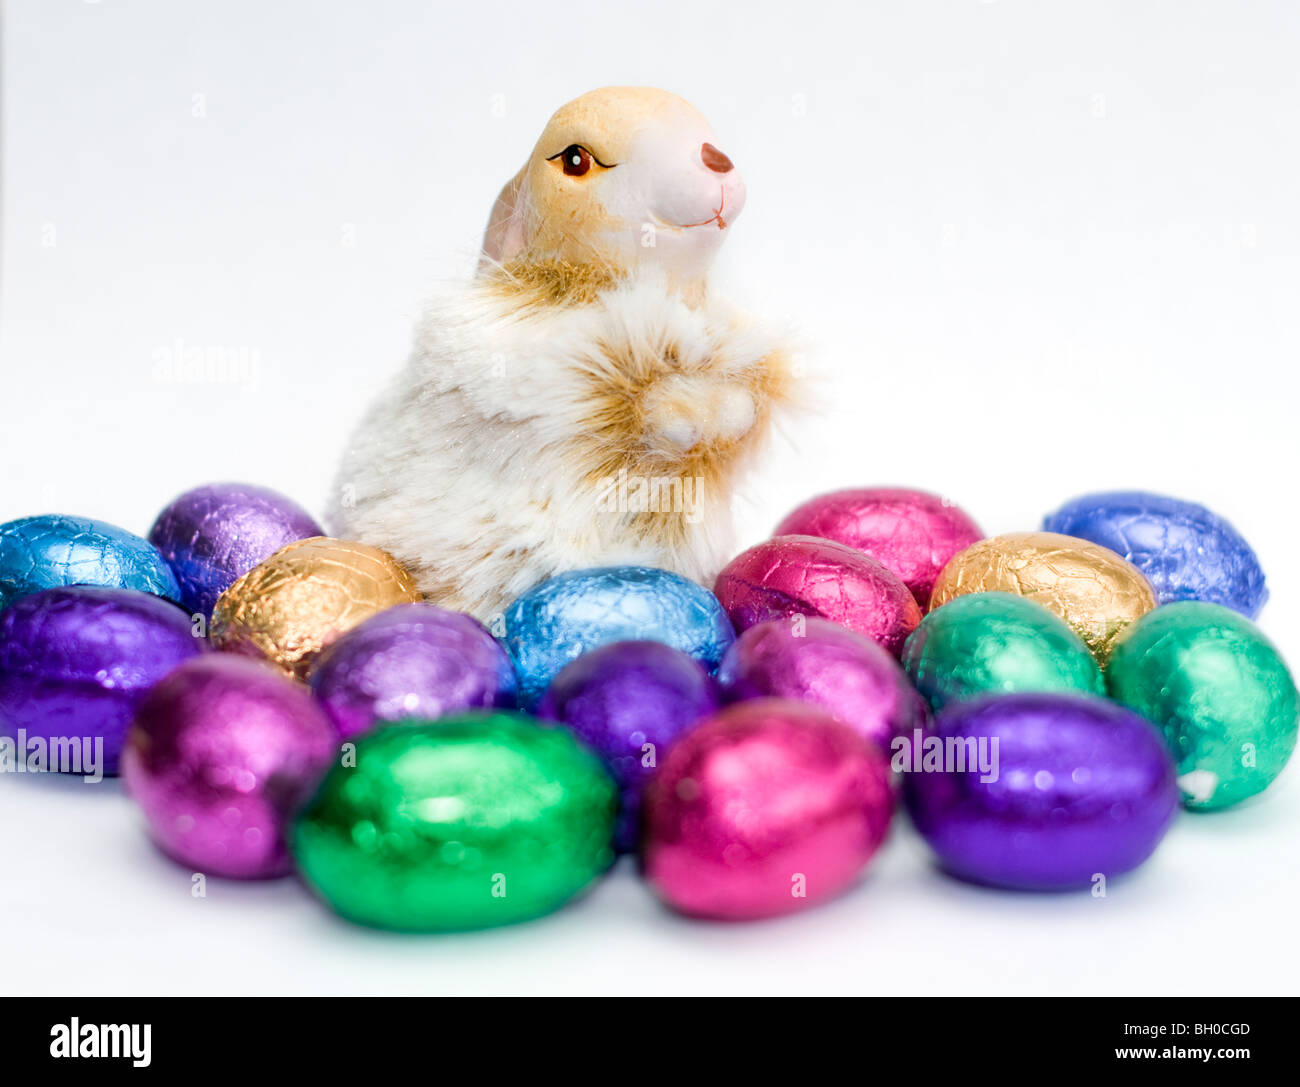 Ornamento De Un conejo rodeado de coloridos mini huevos de Pascua de chocolate sobre un fondo blanco. Foto de stock